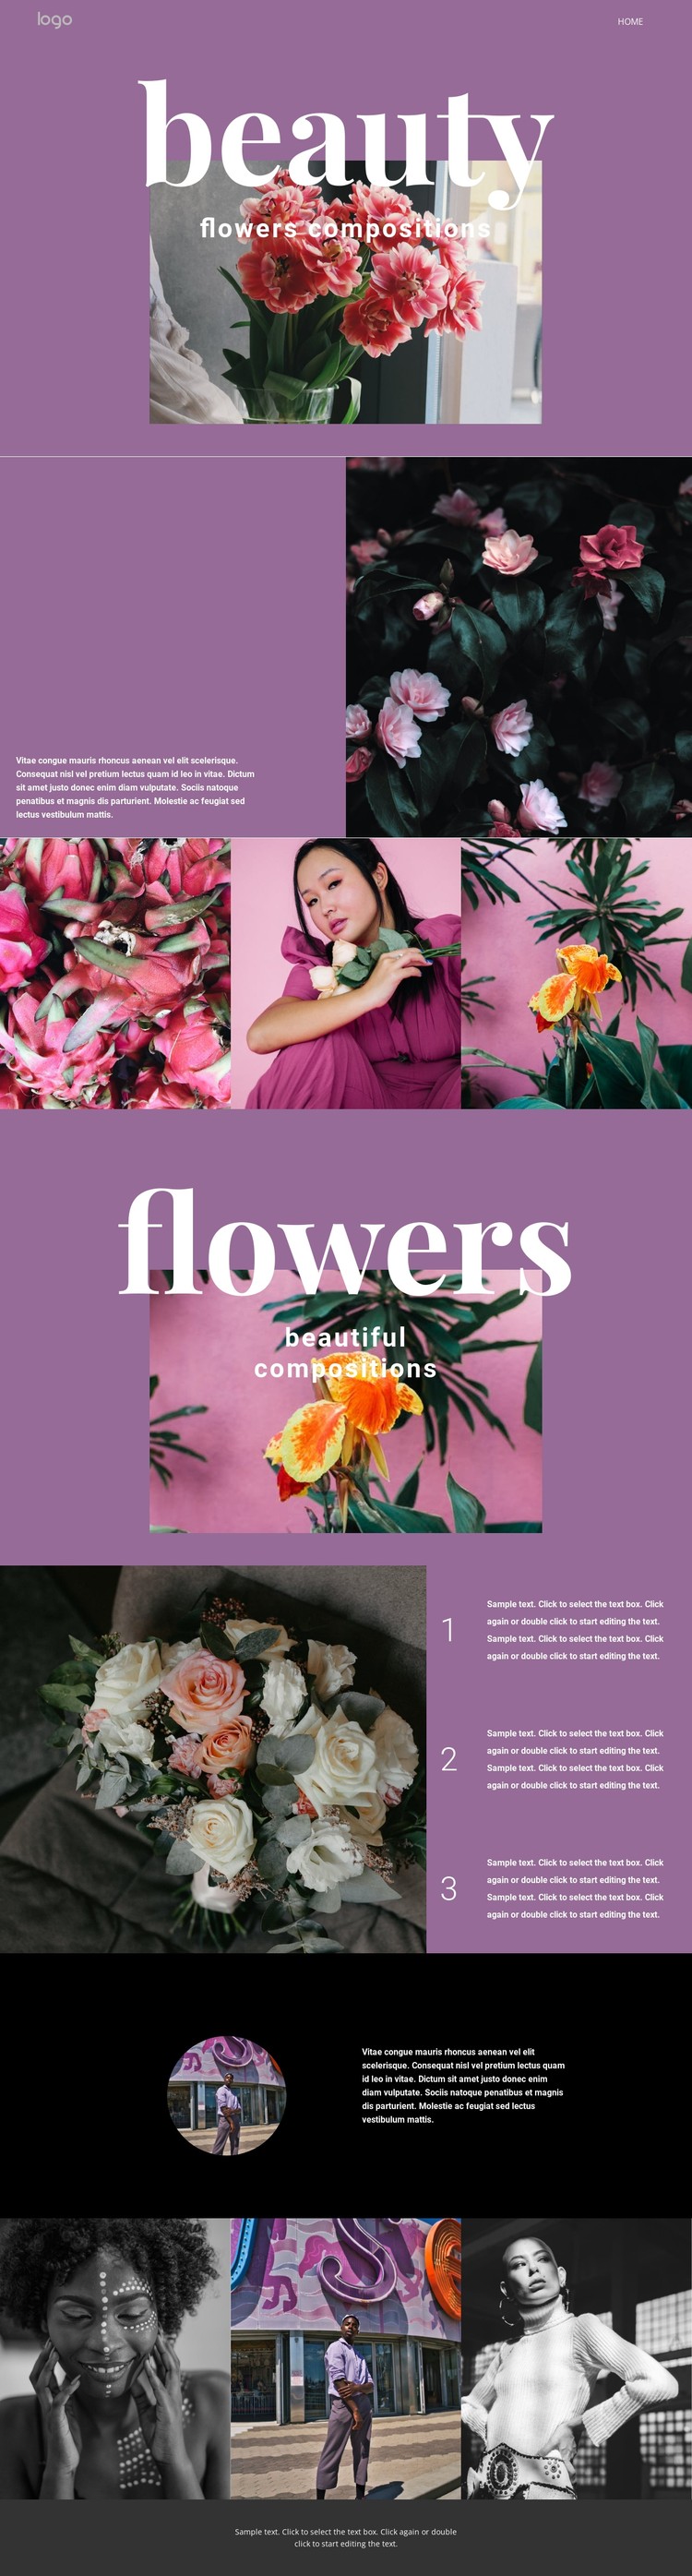 Flower salon CSS Template